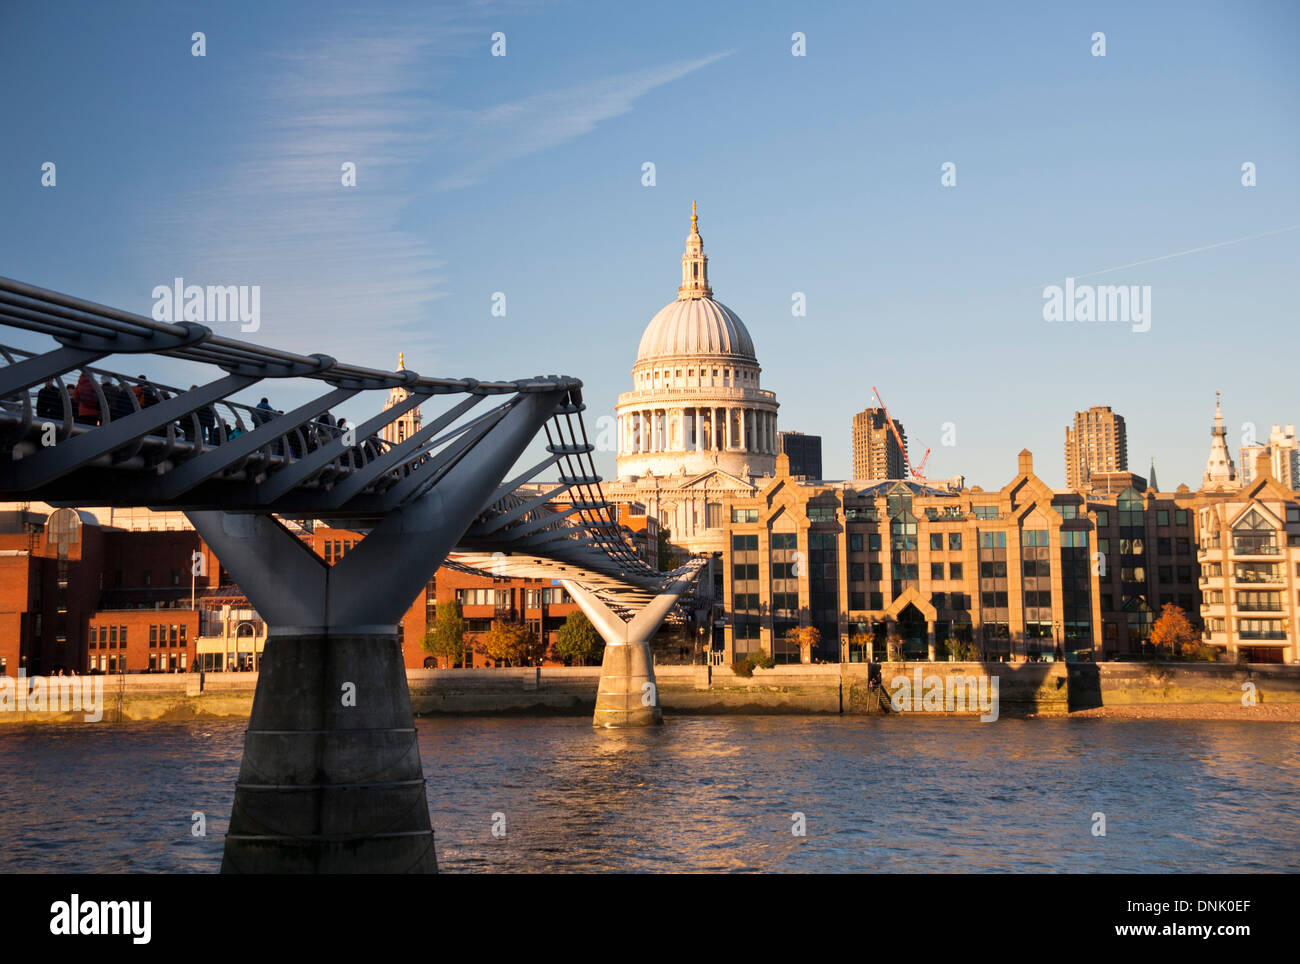 Vue de la Cathédrale St Paul montrant le Millennium Bridge et de la Tamise, Londres, Angleterre, Royaume-Uni Banque D'Images